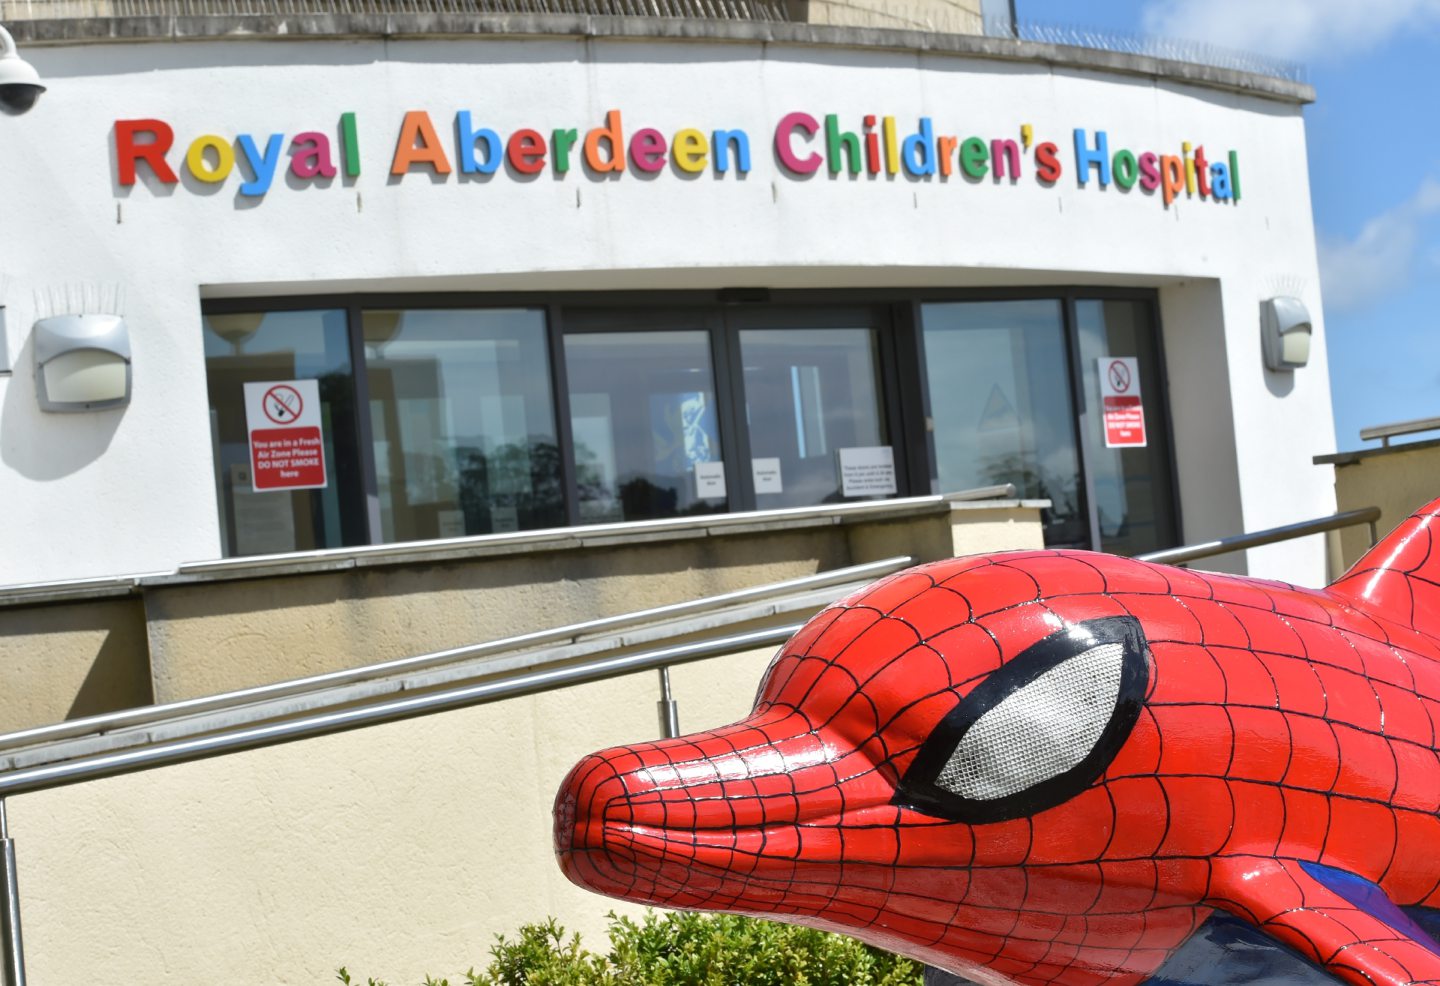 The front door of Royal Aberdeen Children's Hospital